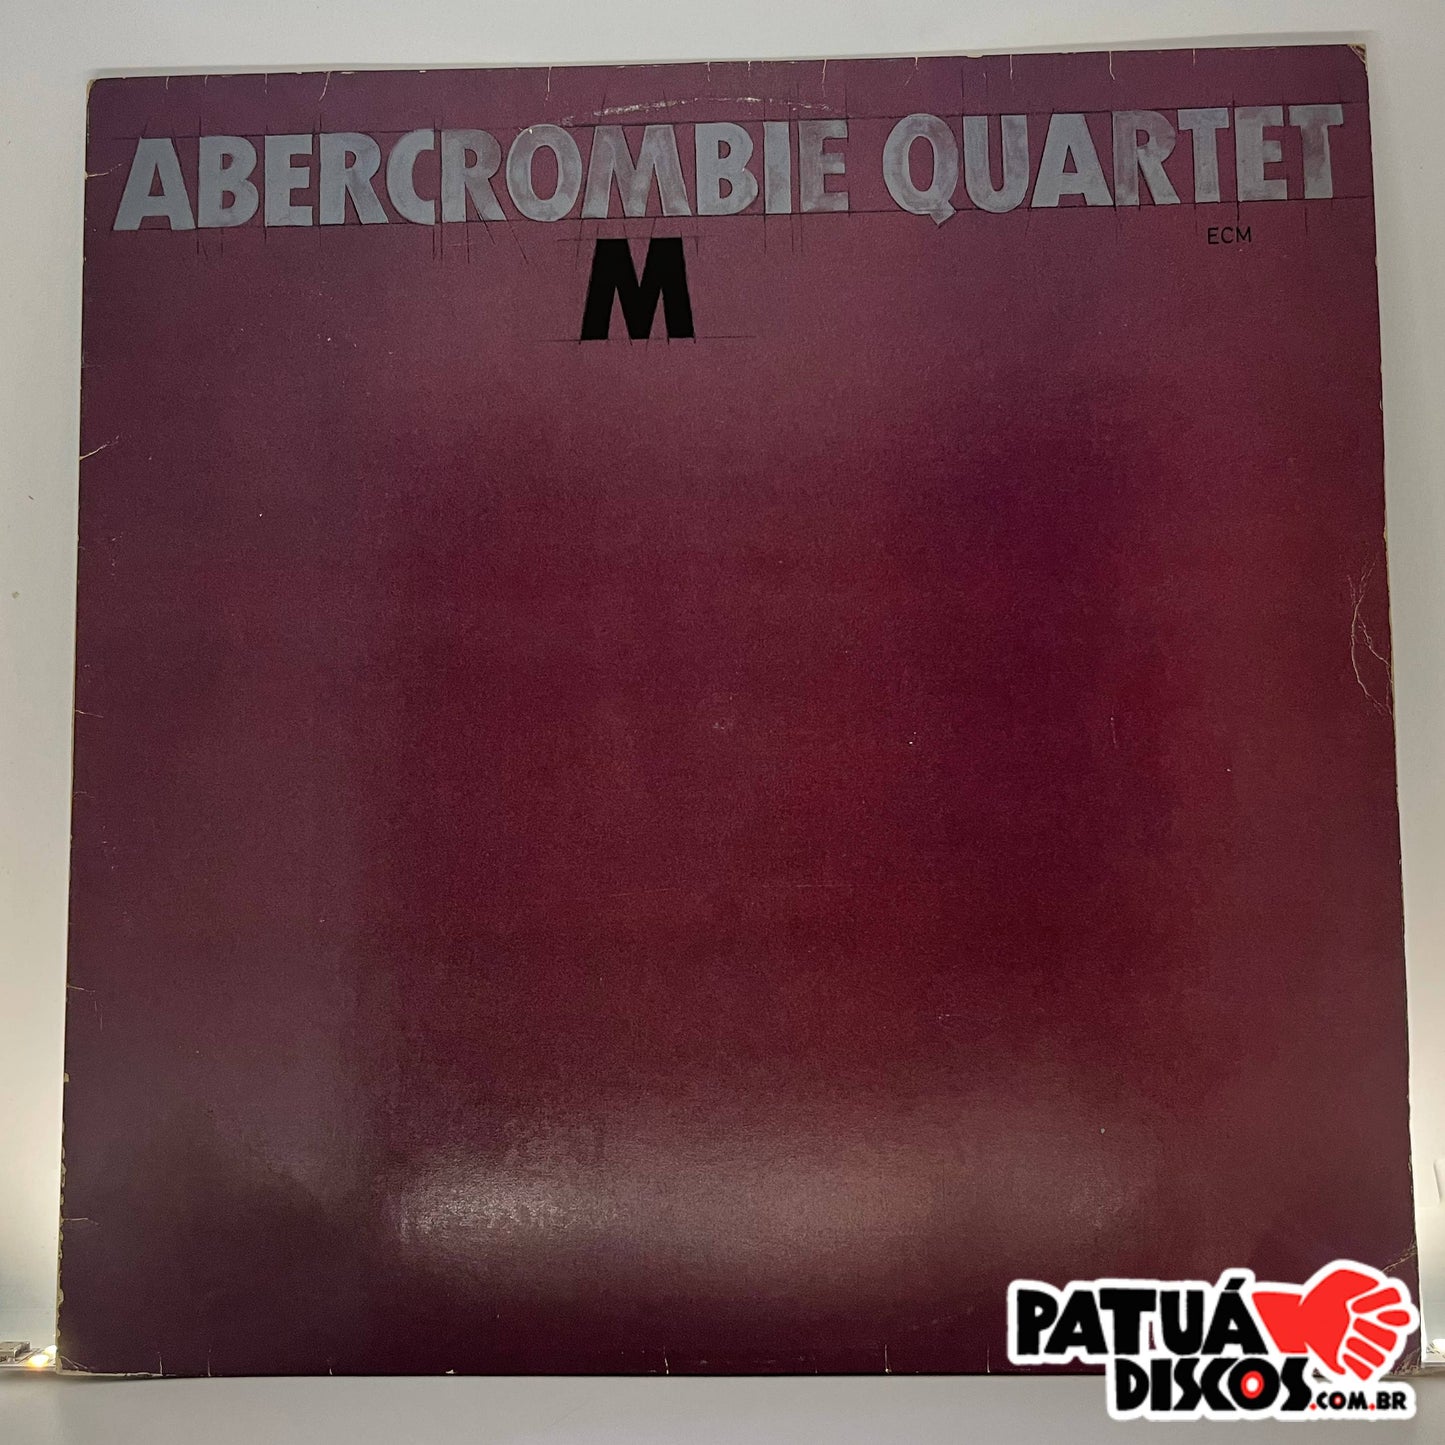 Abercrombie Quartet - M - LP